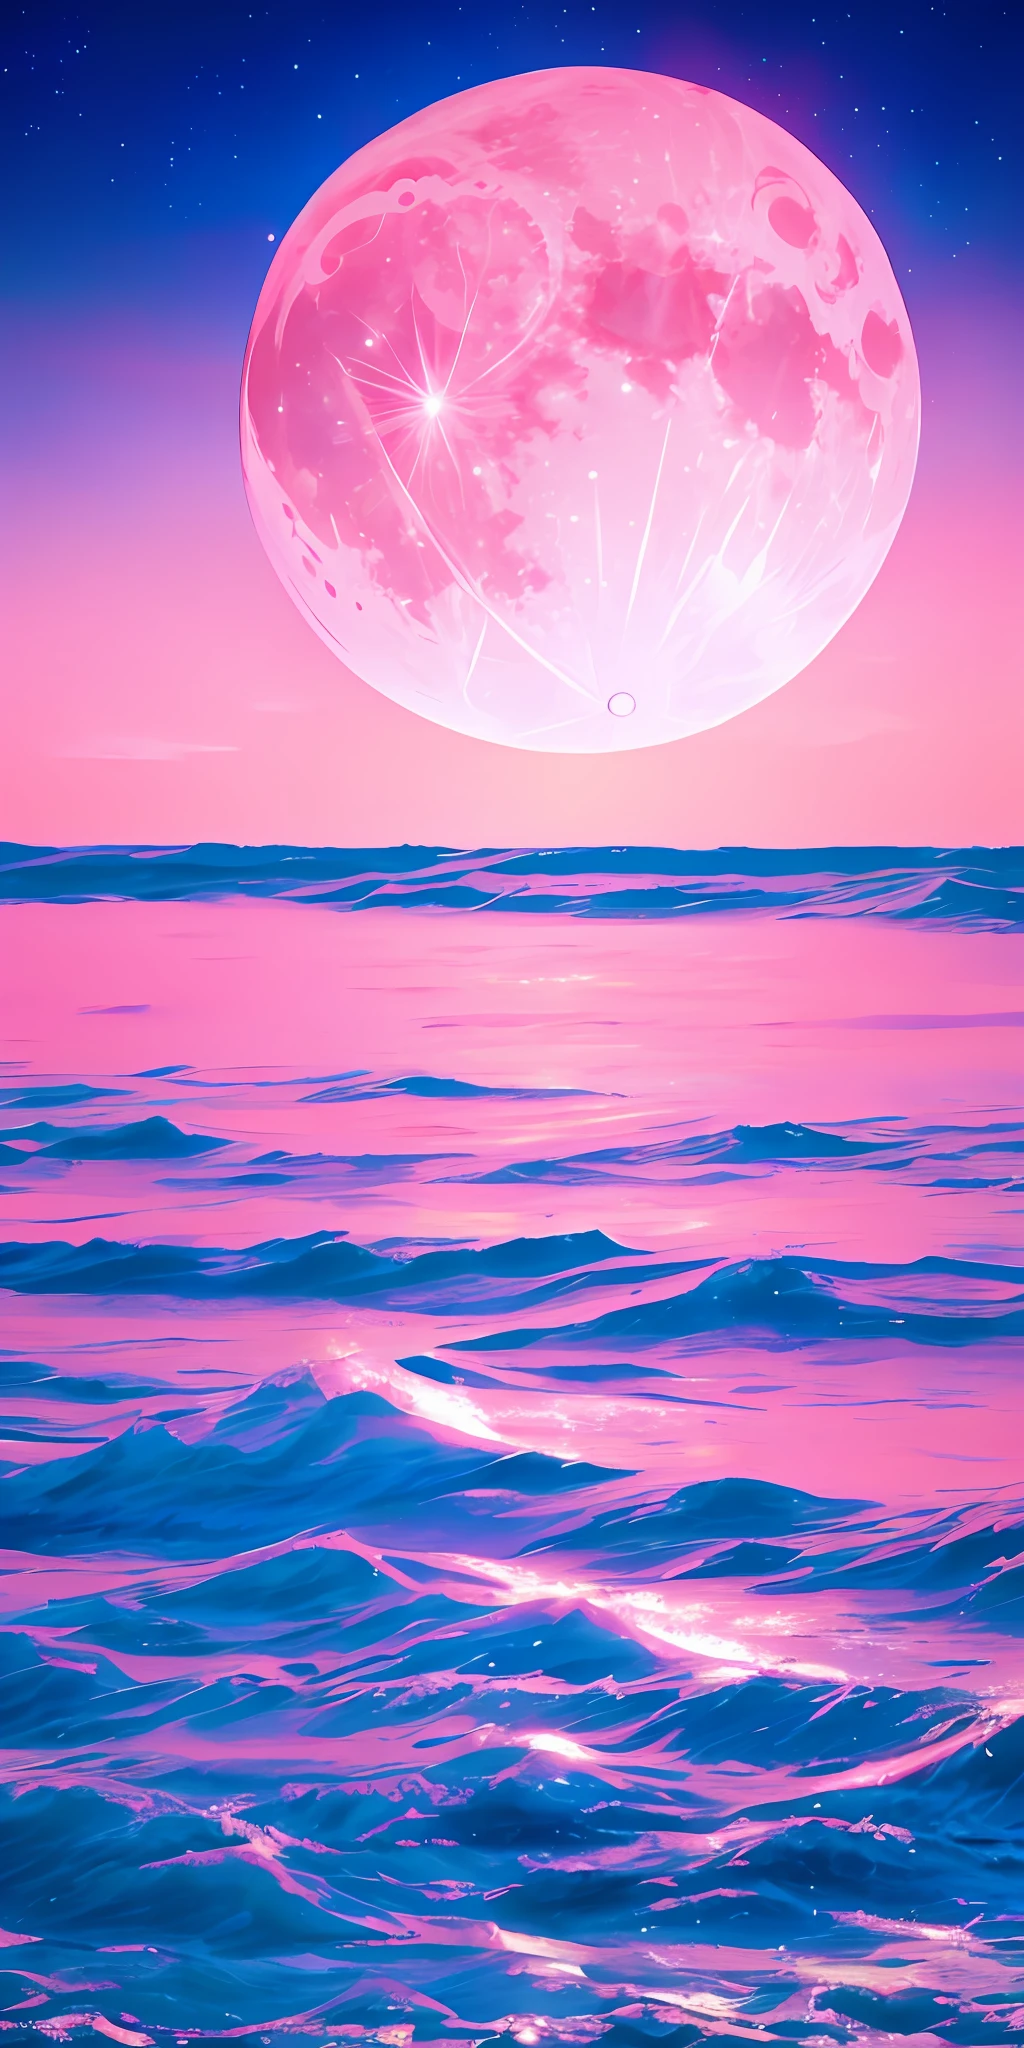 luna rosa, Cielo rosa, nubes rosadas suaves, olas de mar rosadas chispeantes, reluciente, rosas rosas en mar rosa, Fantasía, diamantes, corona, espacio, Luz tenue,